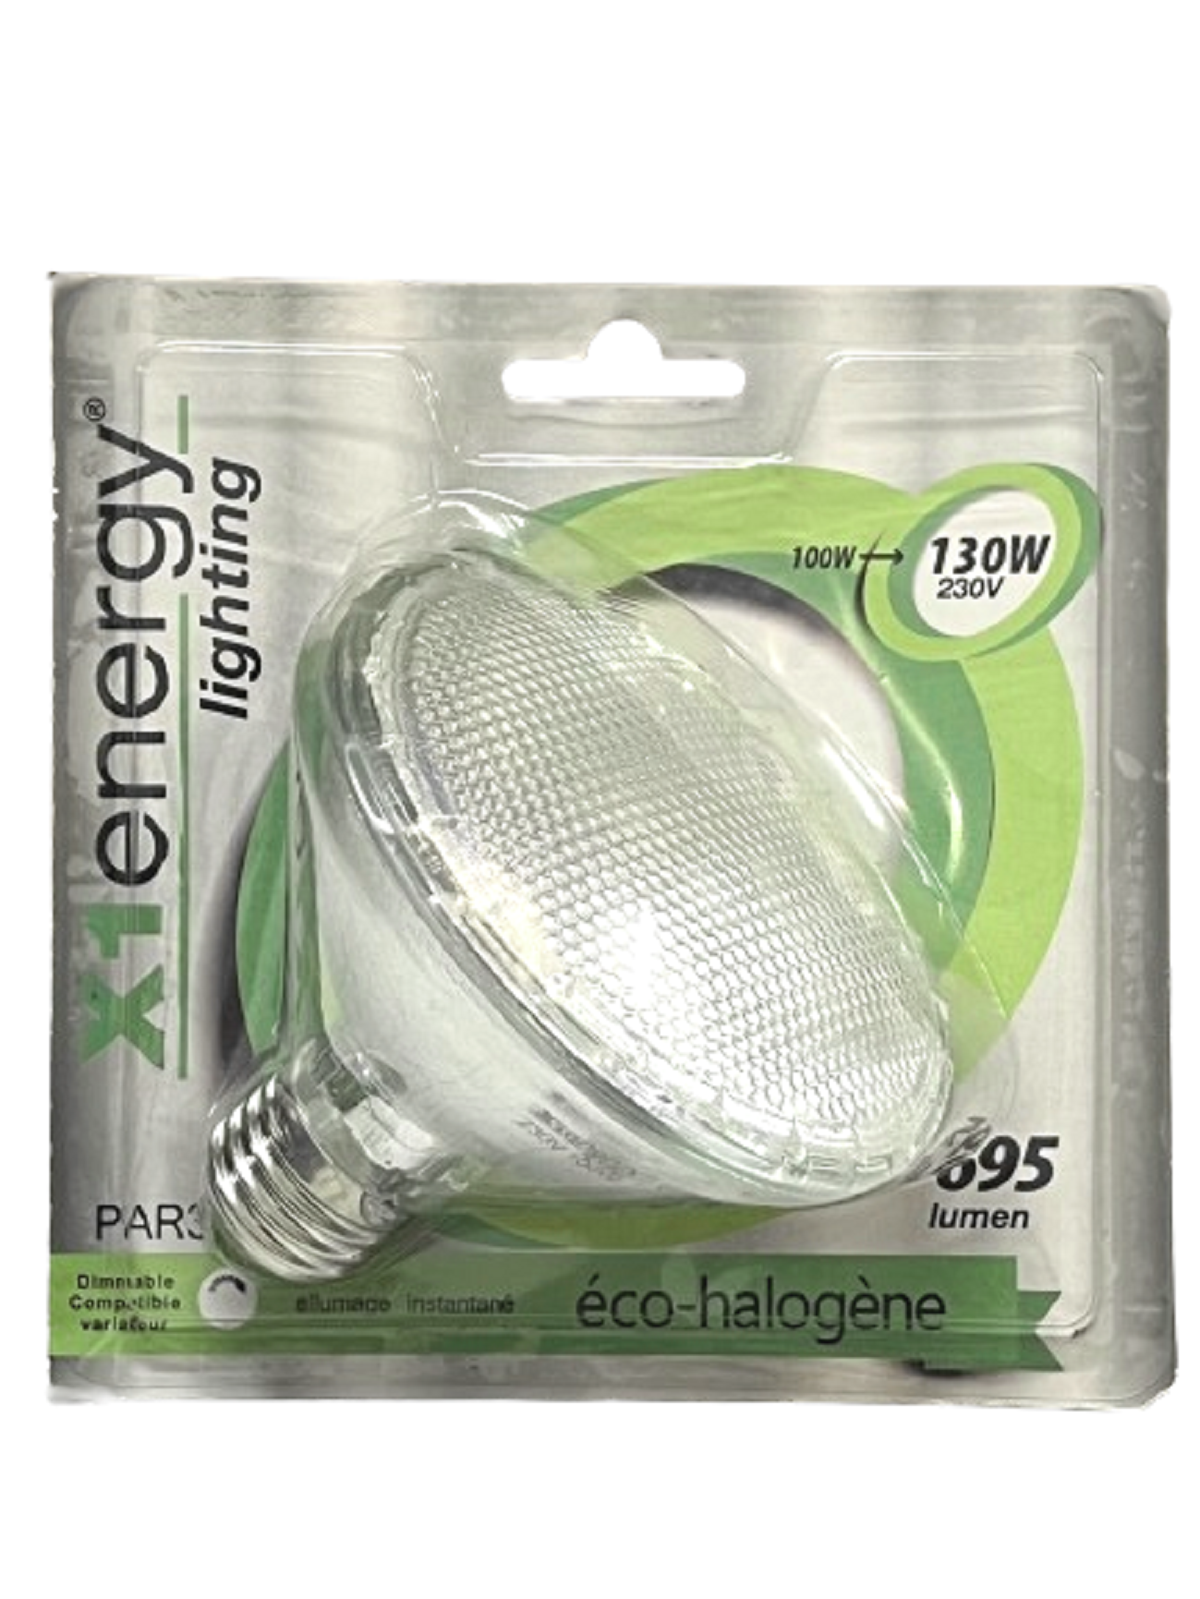 E27 halogen bulb, 695 lumens, 100W, 2700K warm white